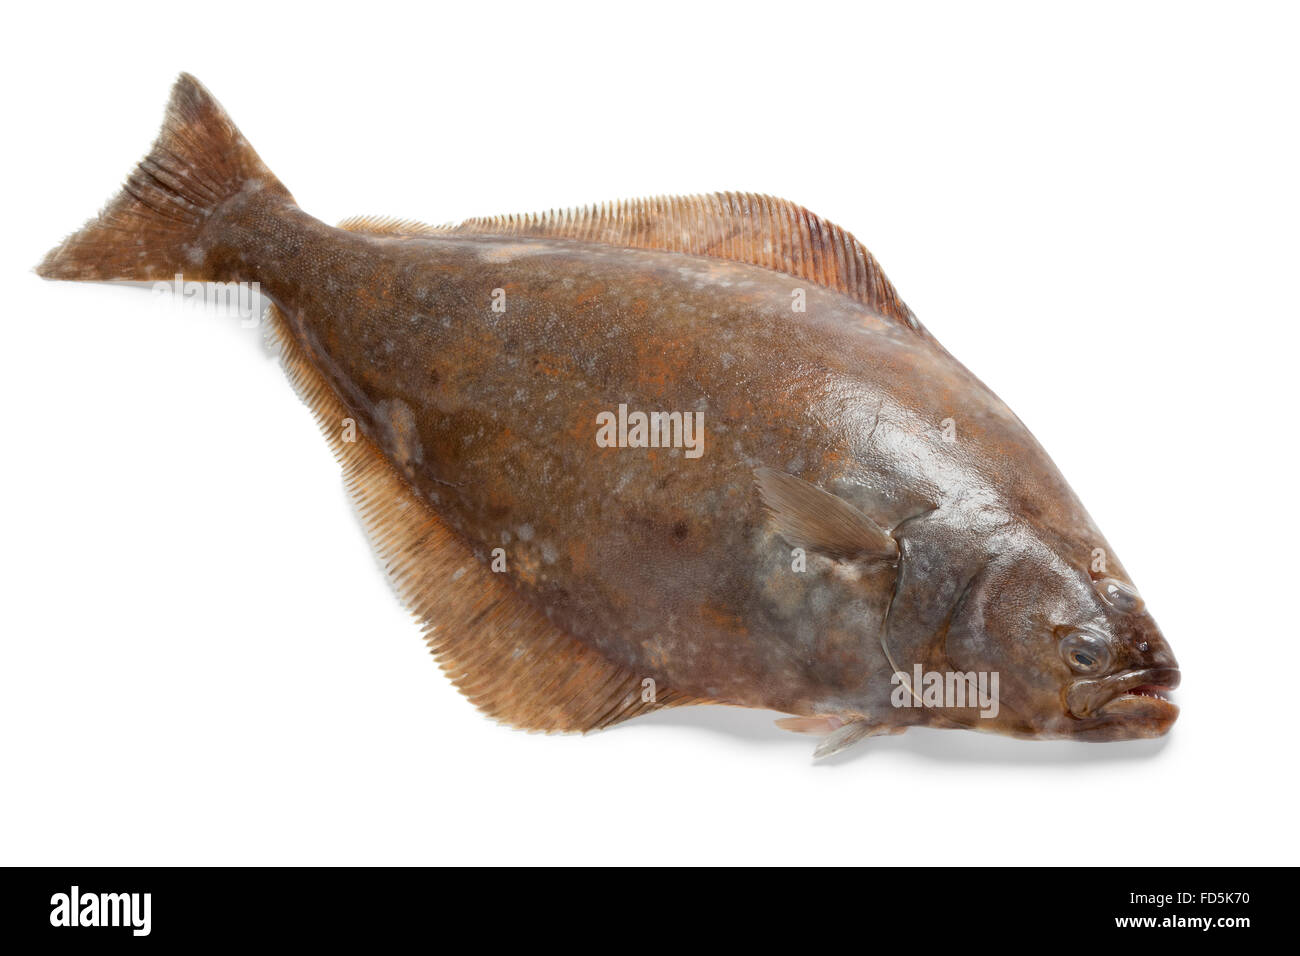 Fresh raw halibut fish on white background Stock Photo